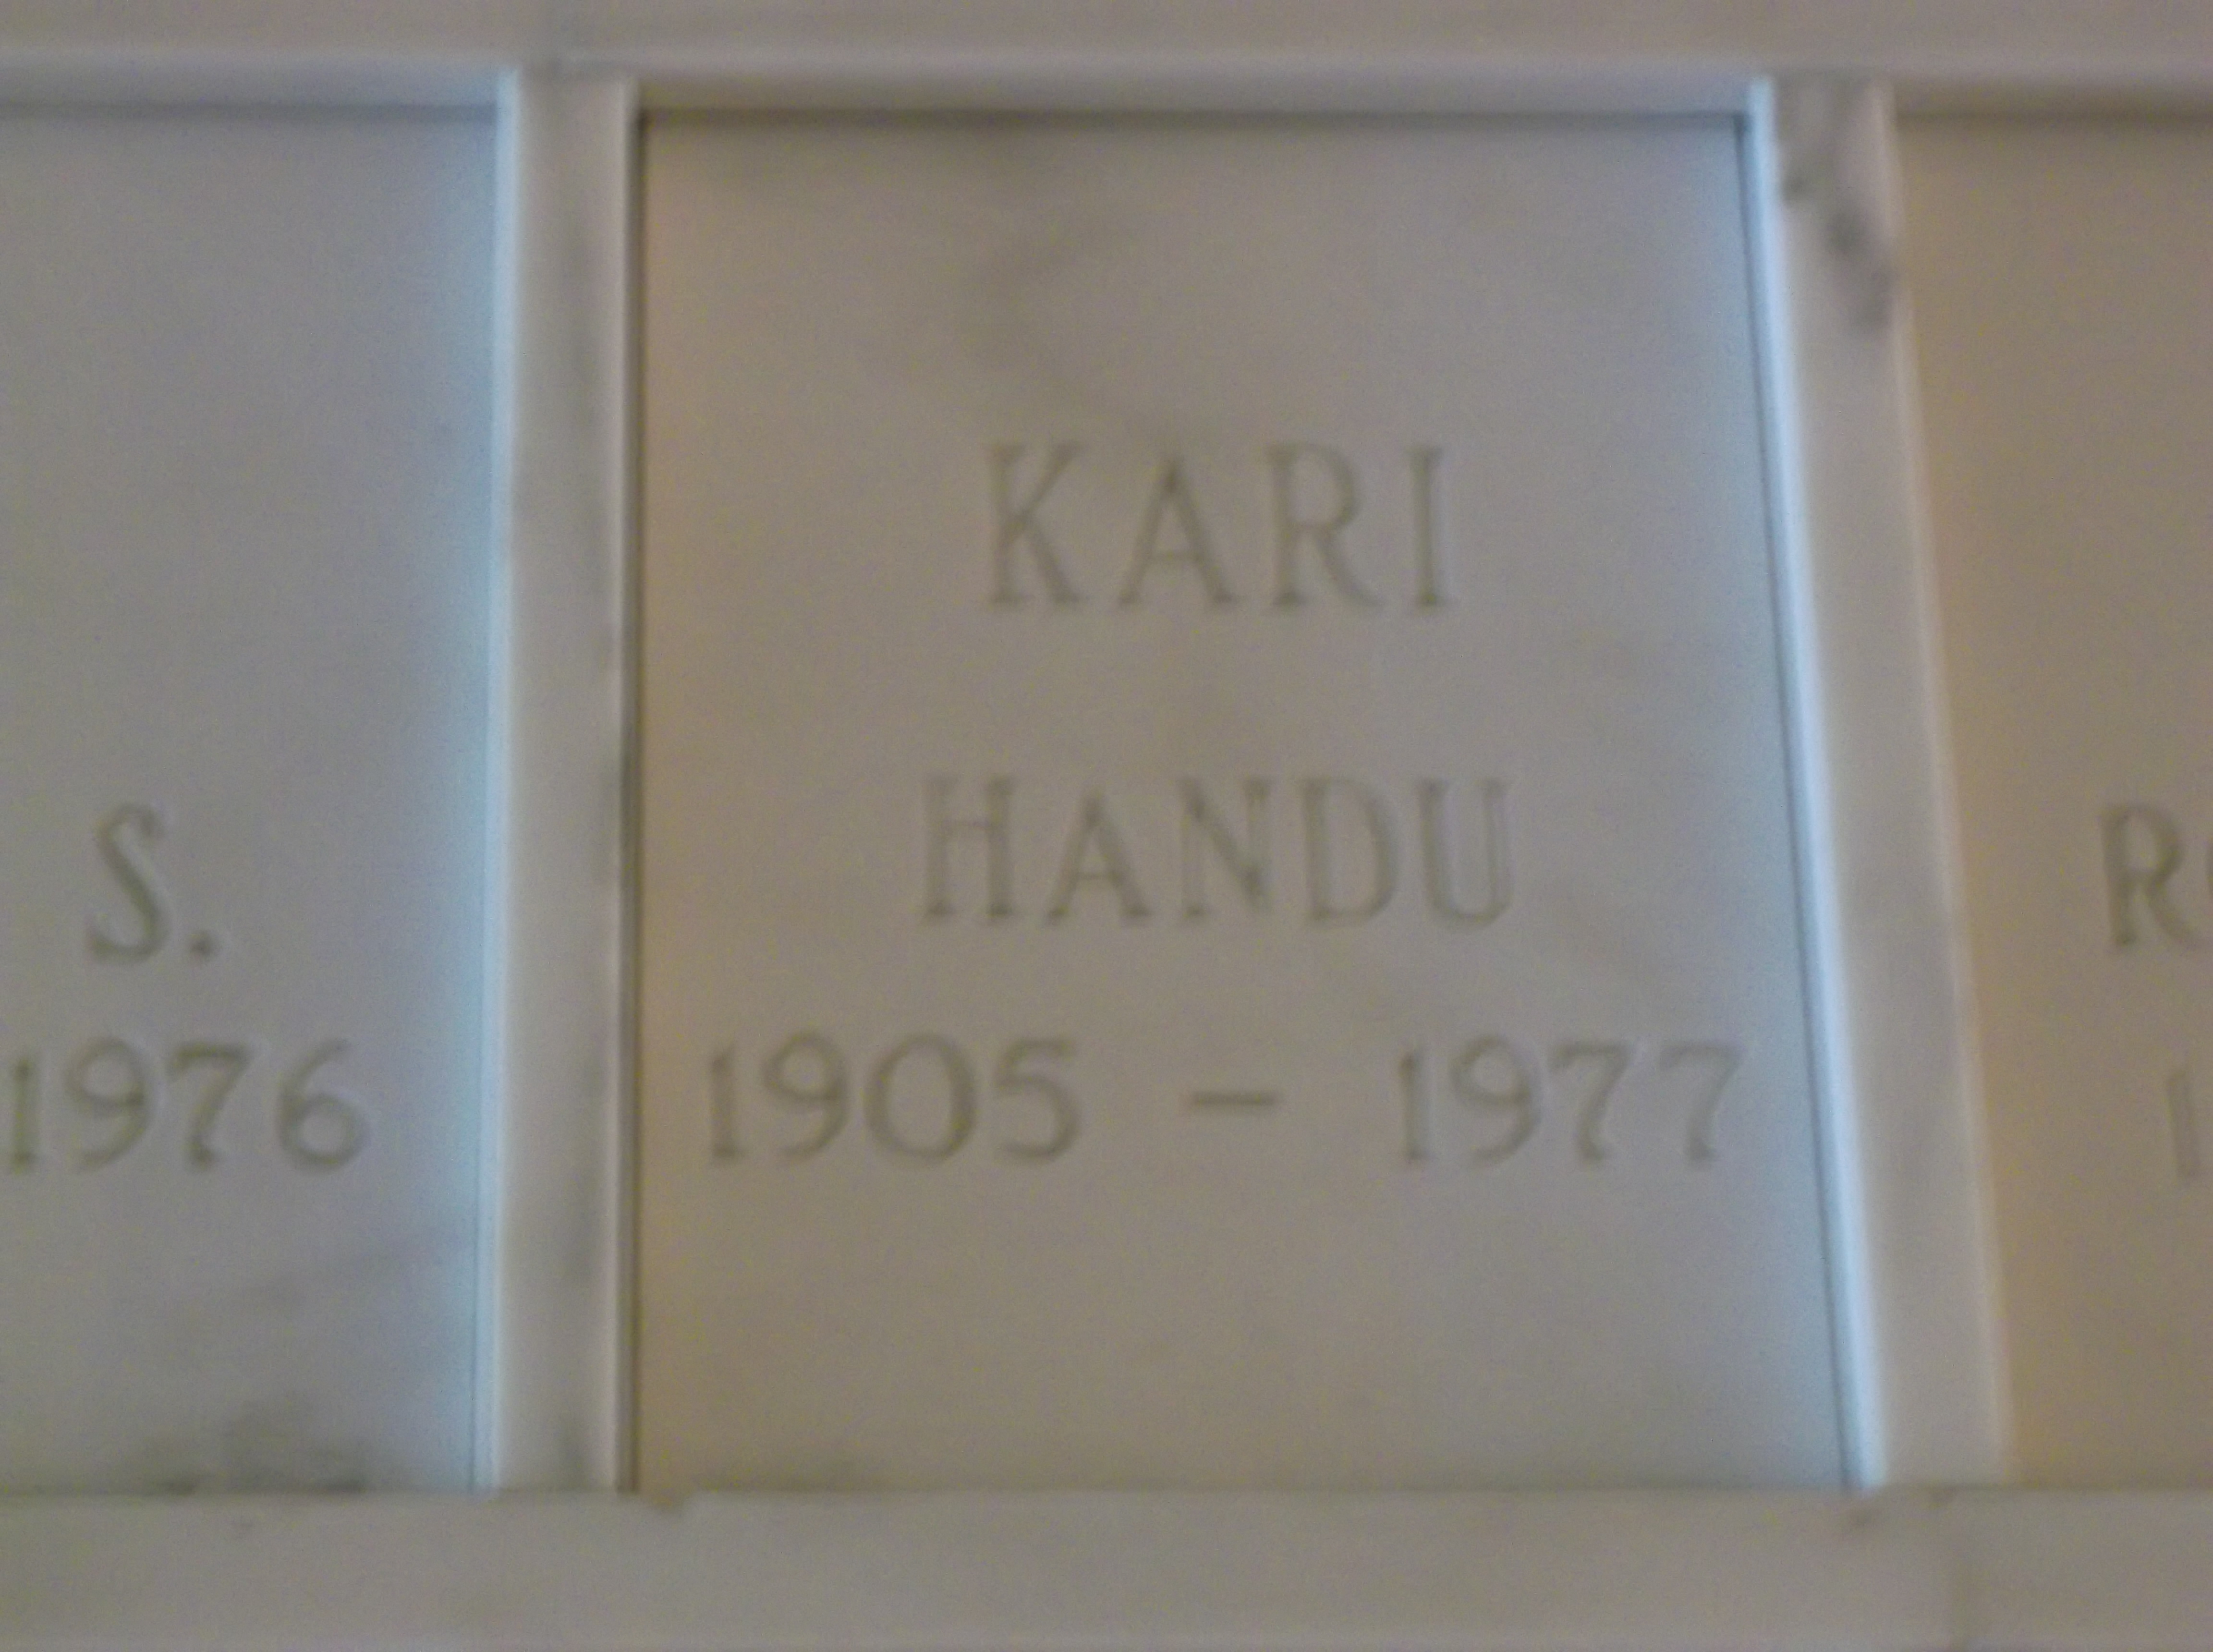 Handu Kari